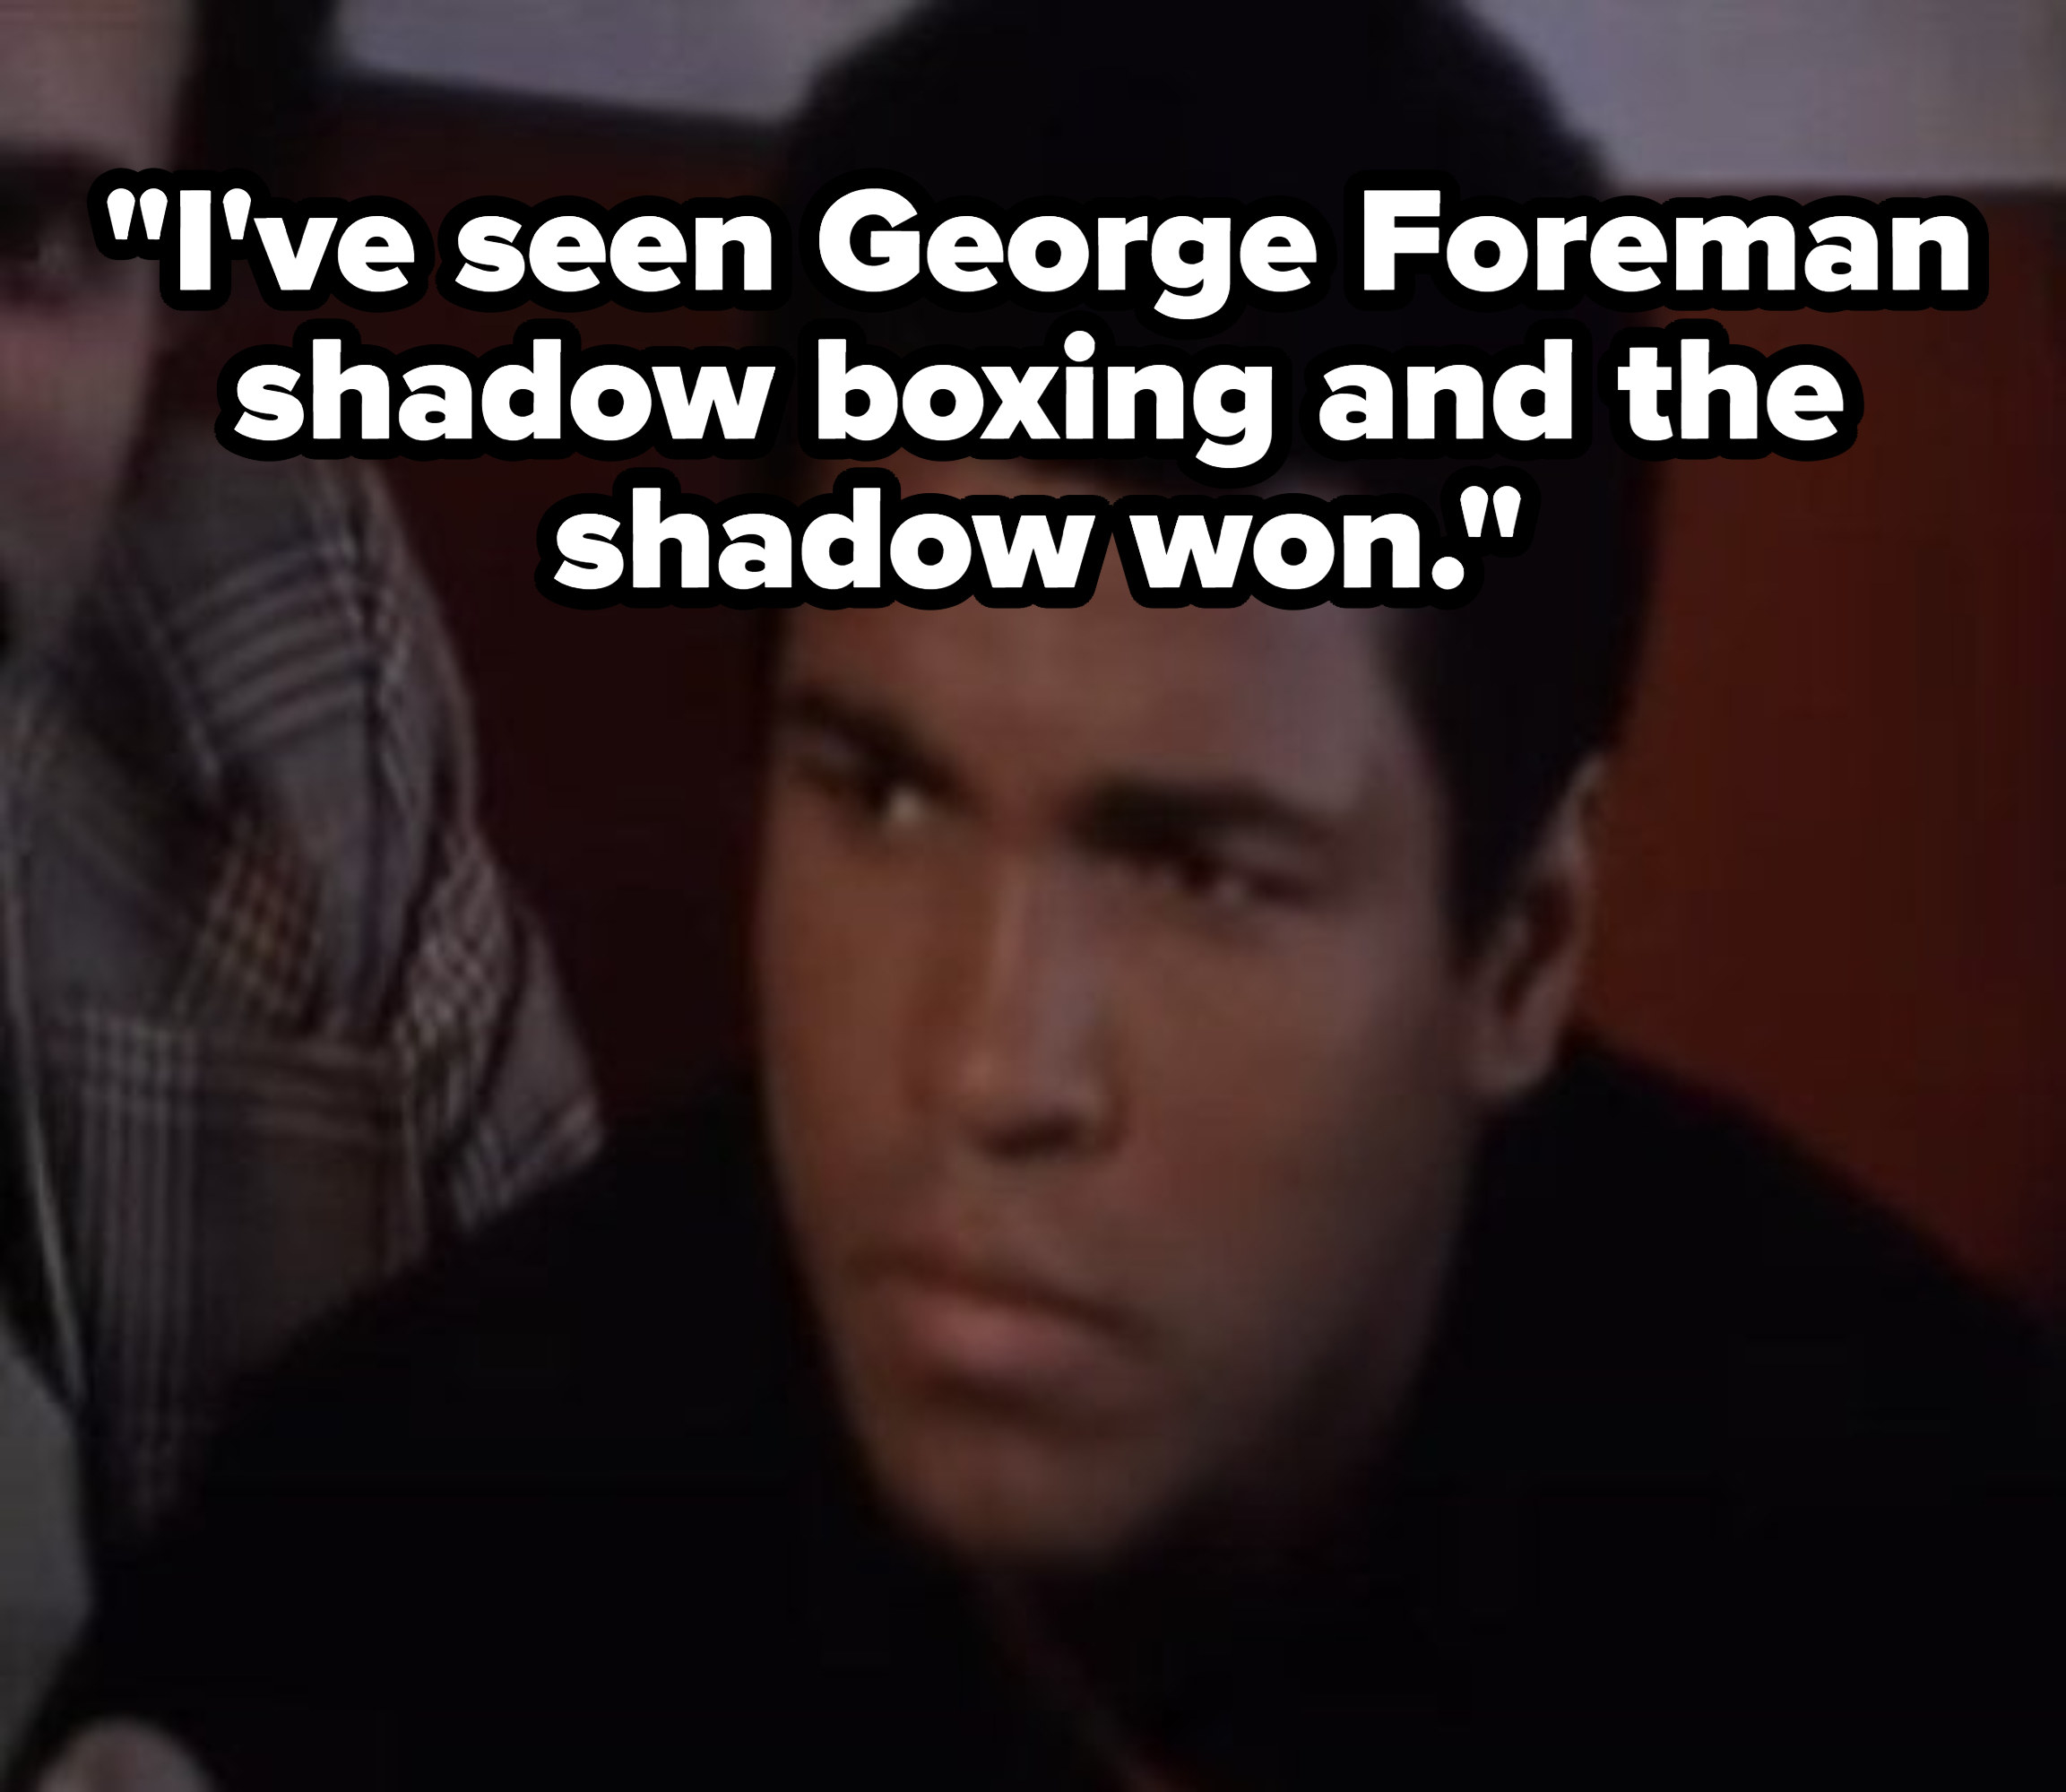 穆罕默德·阿里与引用的一个新闻发布会上,“我# x27;已经见过乔治·福尔曼太极拳和影子won"